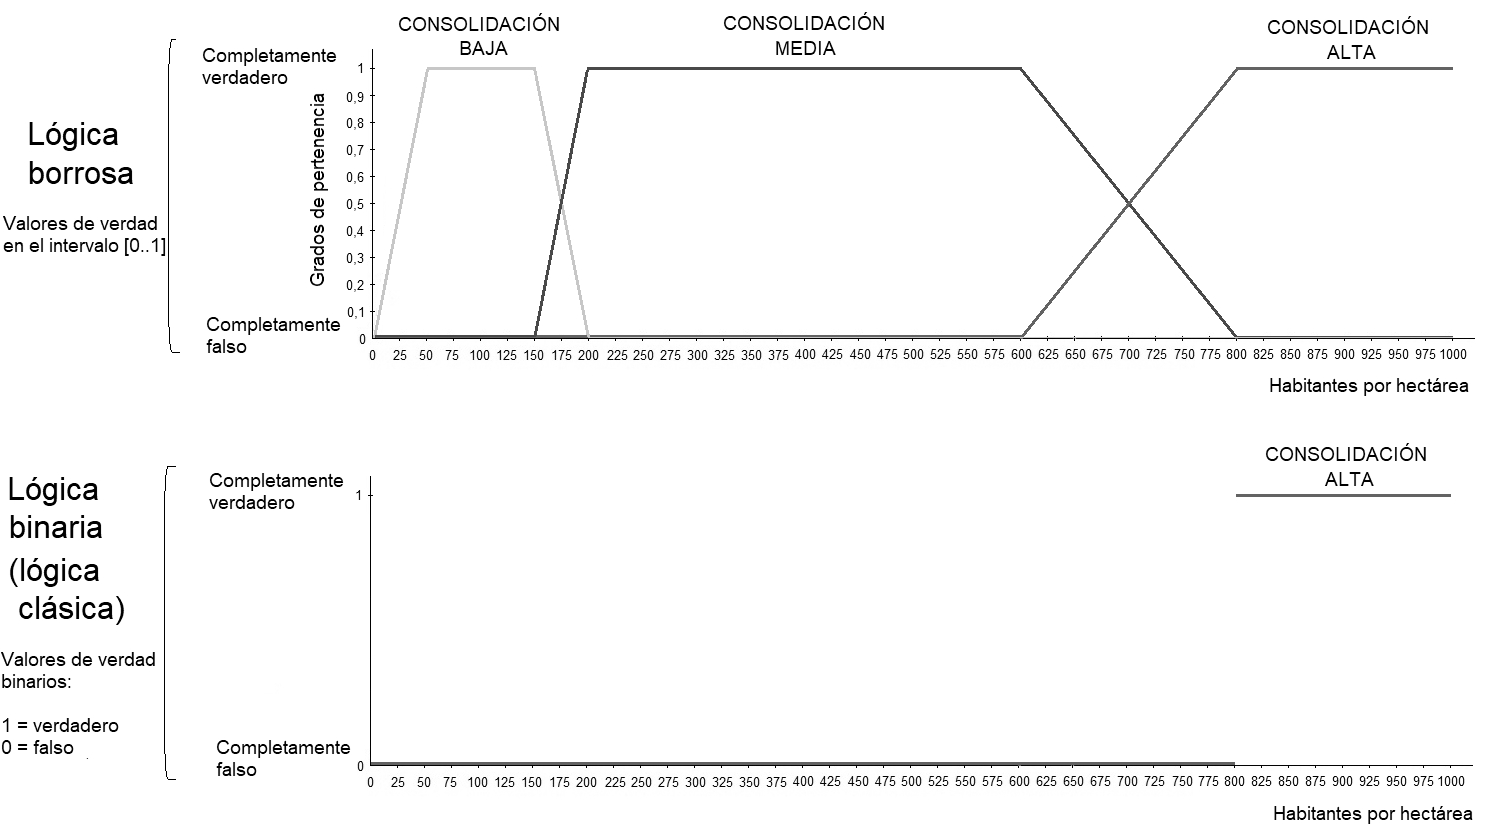 El grado de consolidación en función del número
de habitantes por hectárea usando lógica borrosa (arriba) y lógica clásica
(abajo).